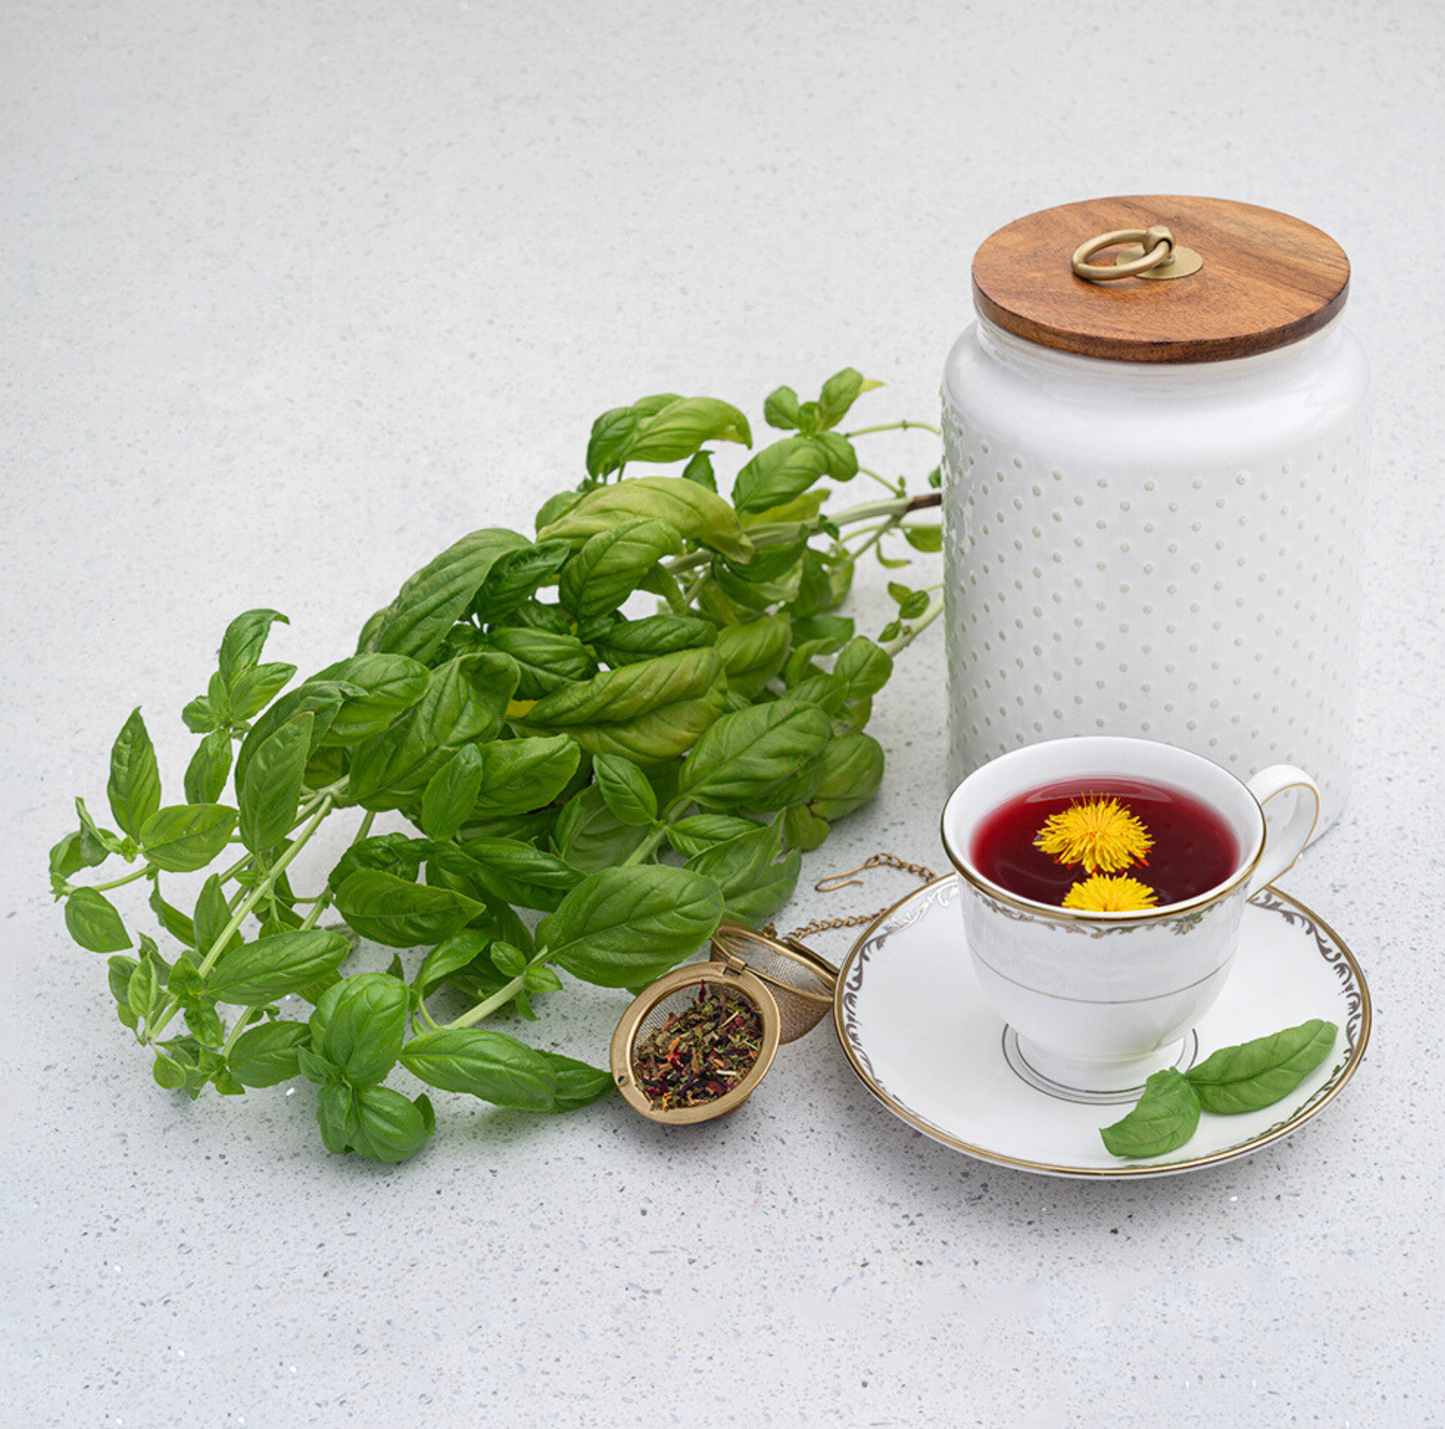 Sour Pacific - Tea for Liver Detox